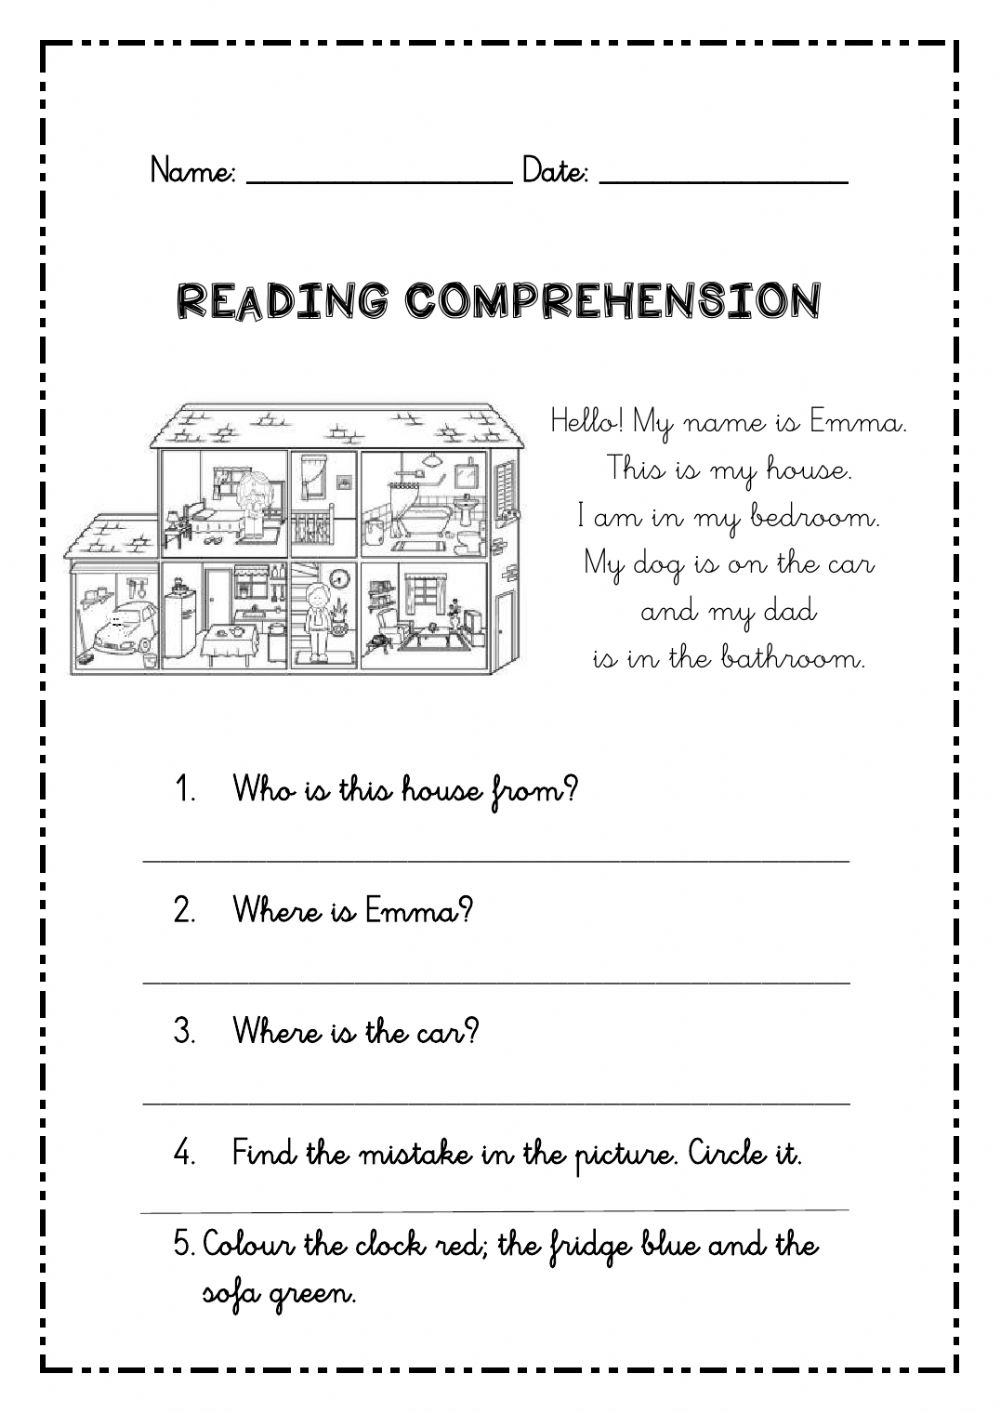 Short Reading Comprehension Passages For Grade 3 King Worksheet Free